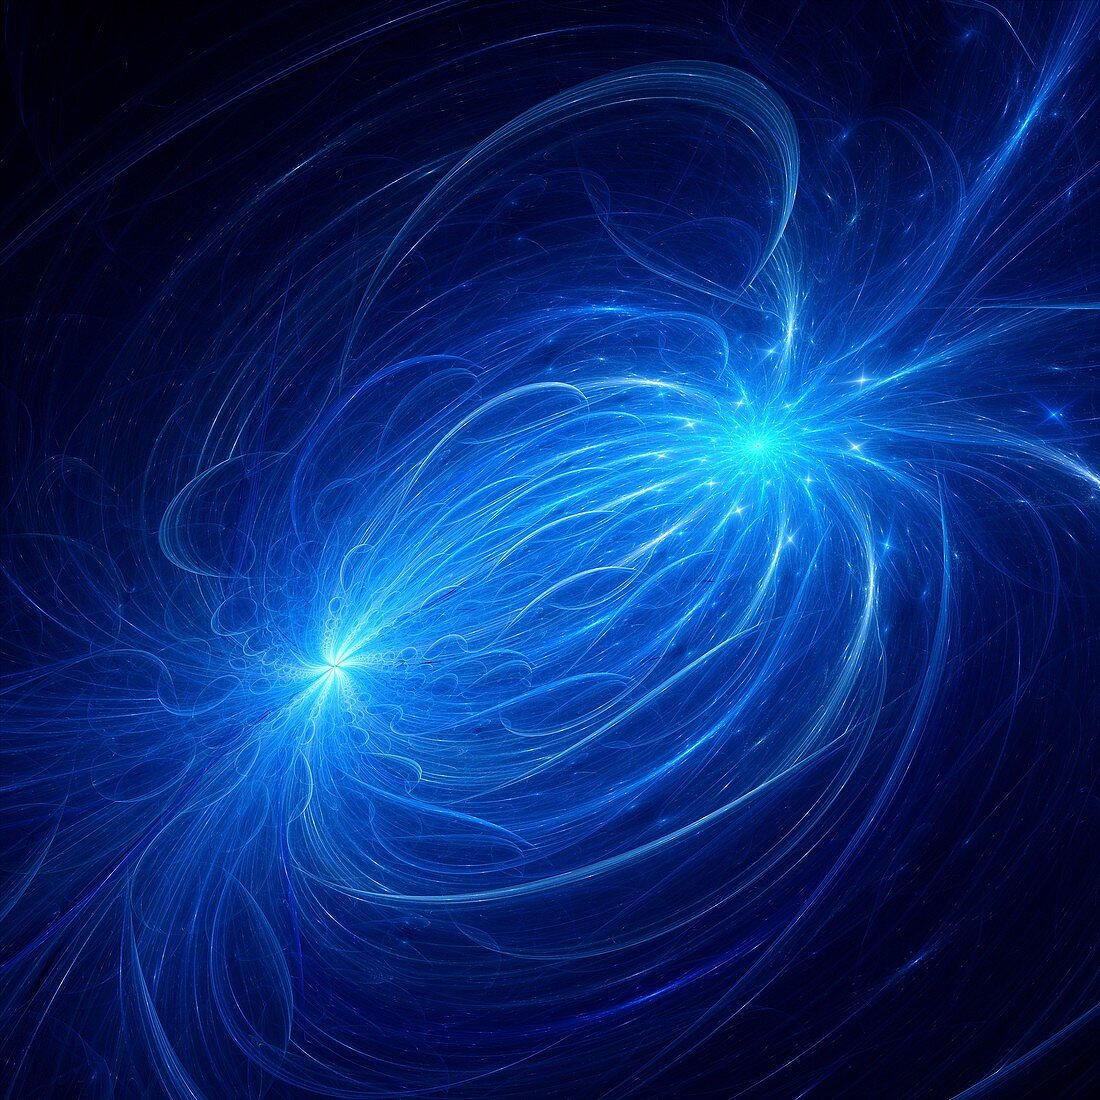 Electromagnetic plasma field, fractal illustration